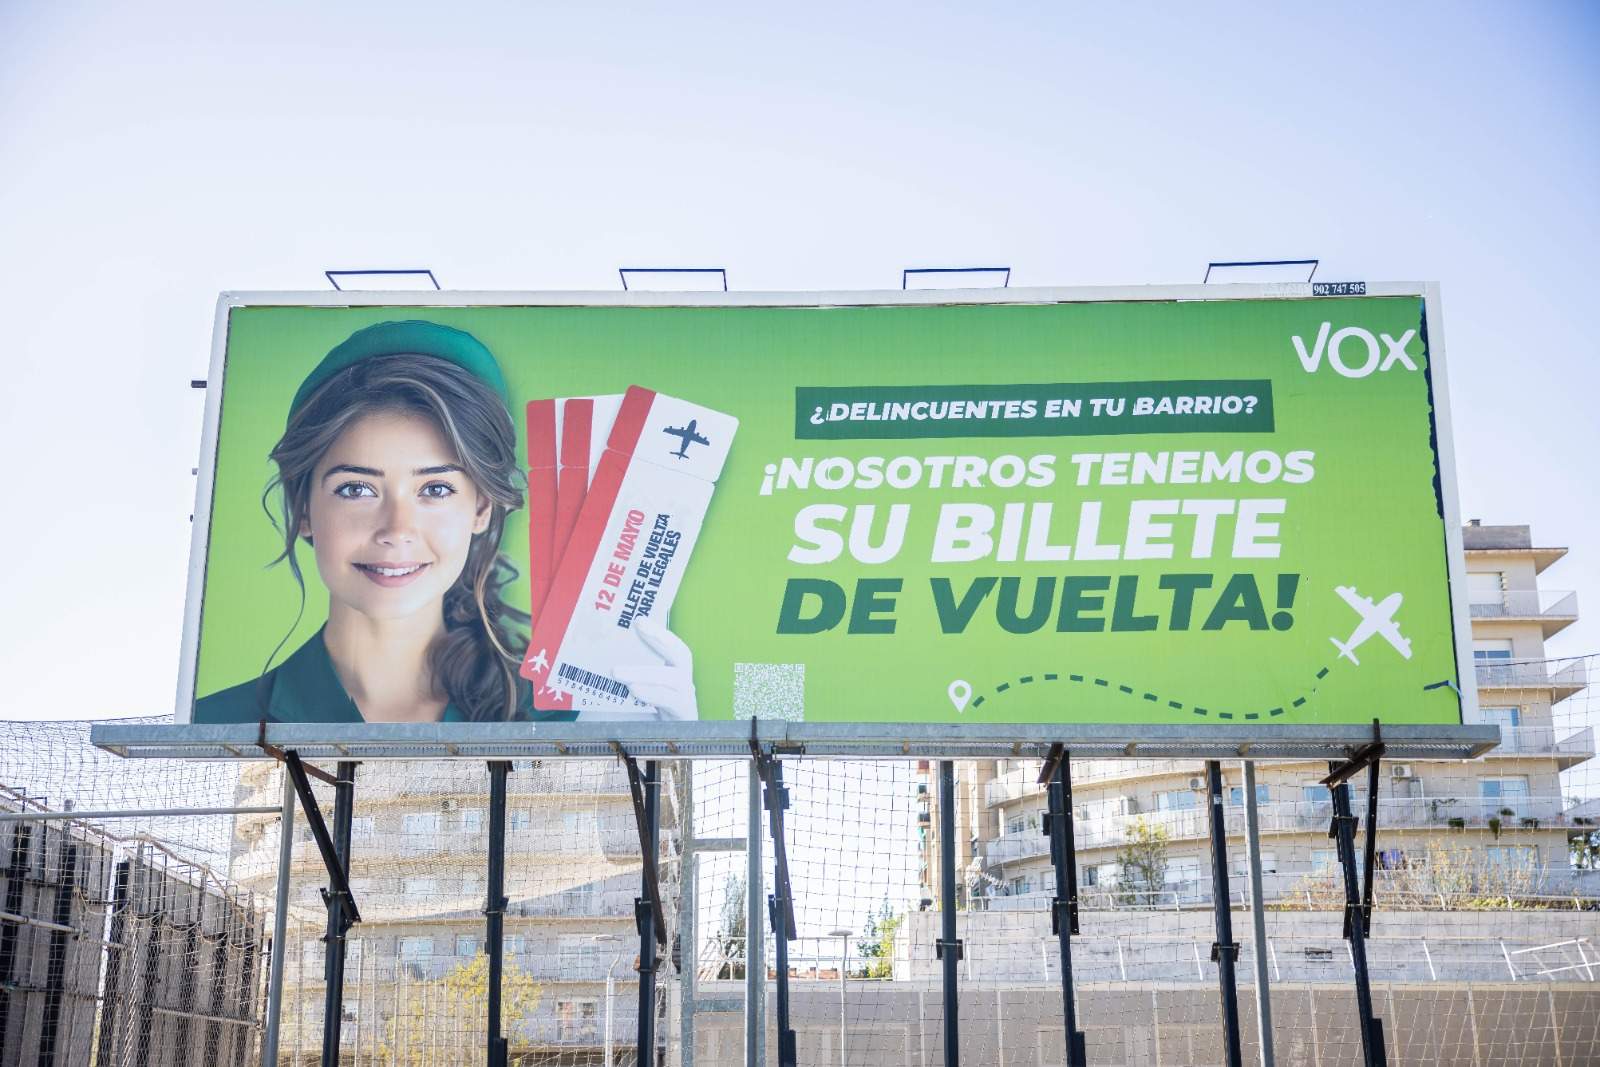 La agresiva campaña de Vox contra los inmigrantes para el 12-M: 'Garriga Airlines' para expulsarlos